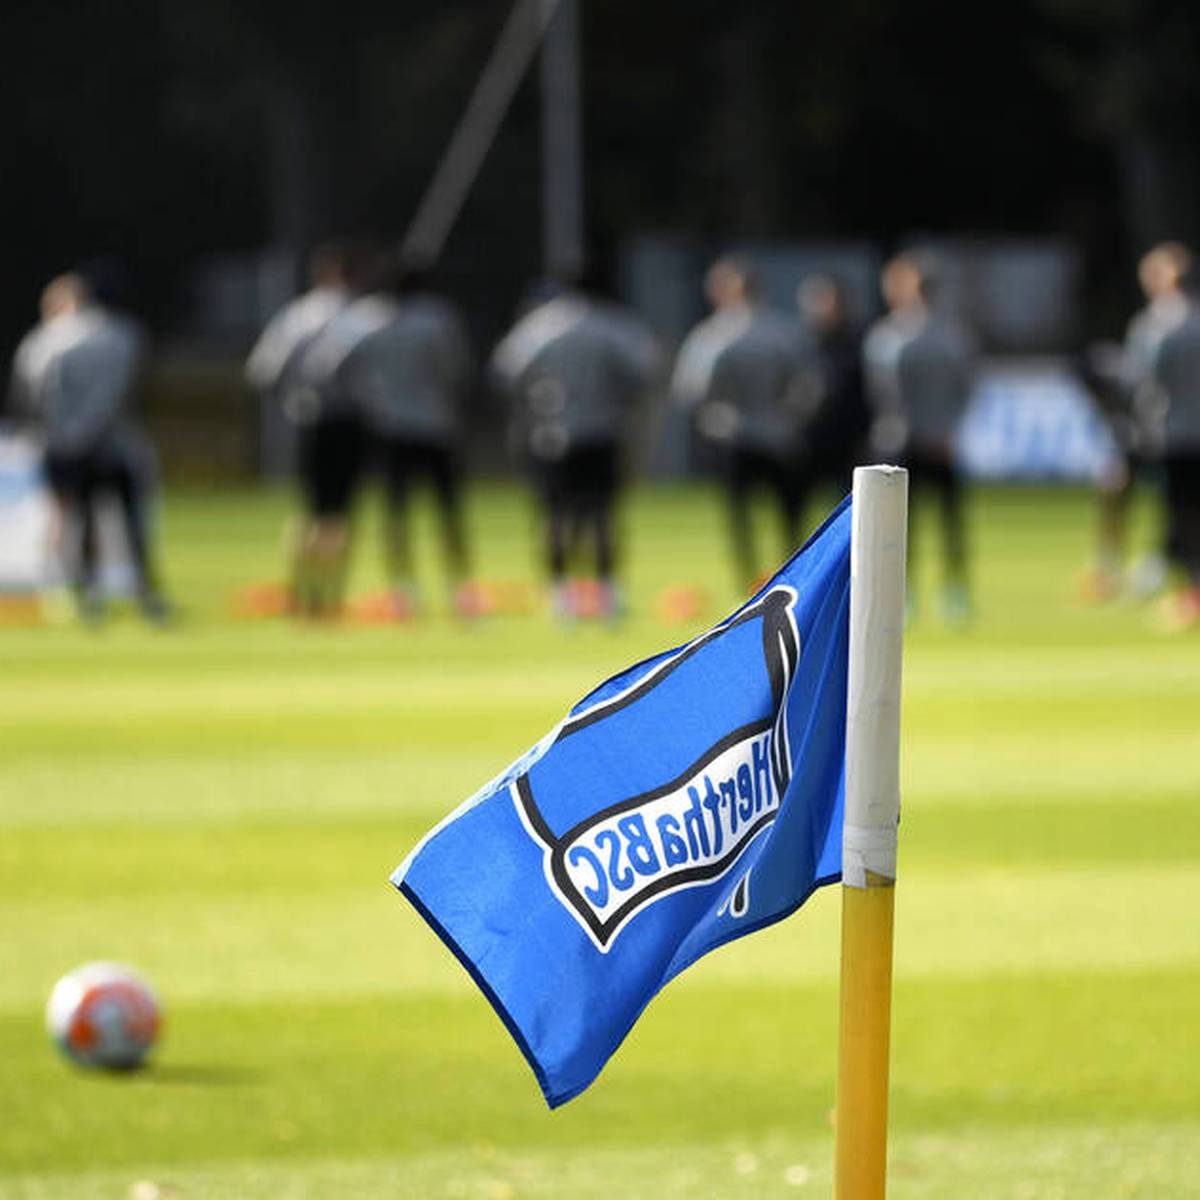 Hertha BSC prüft nach den Vorfällen auf seinem Trainingsplatz vom vergangenen Samstag rechtliche Schritte gegen Teile der organisierten Fanszene.